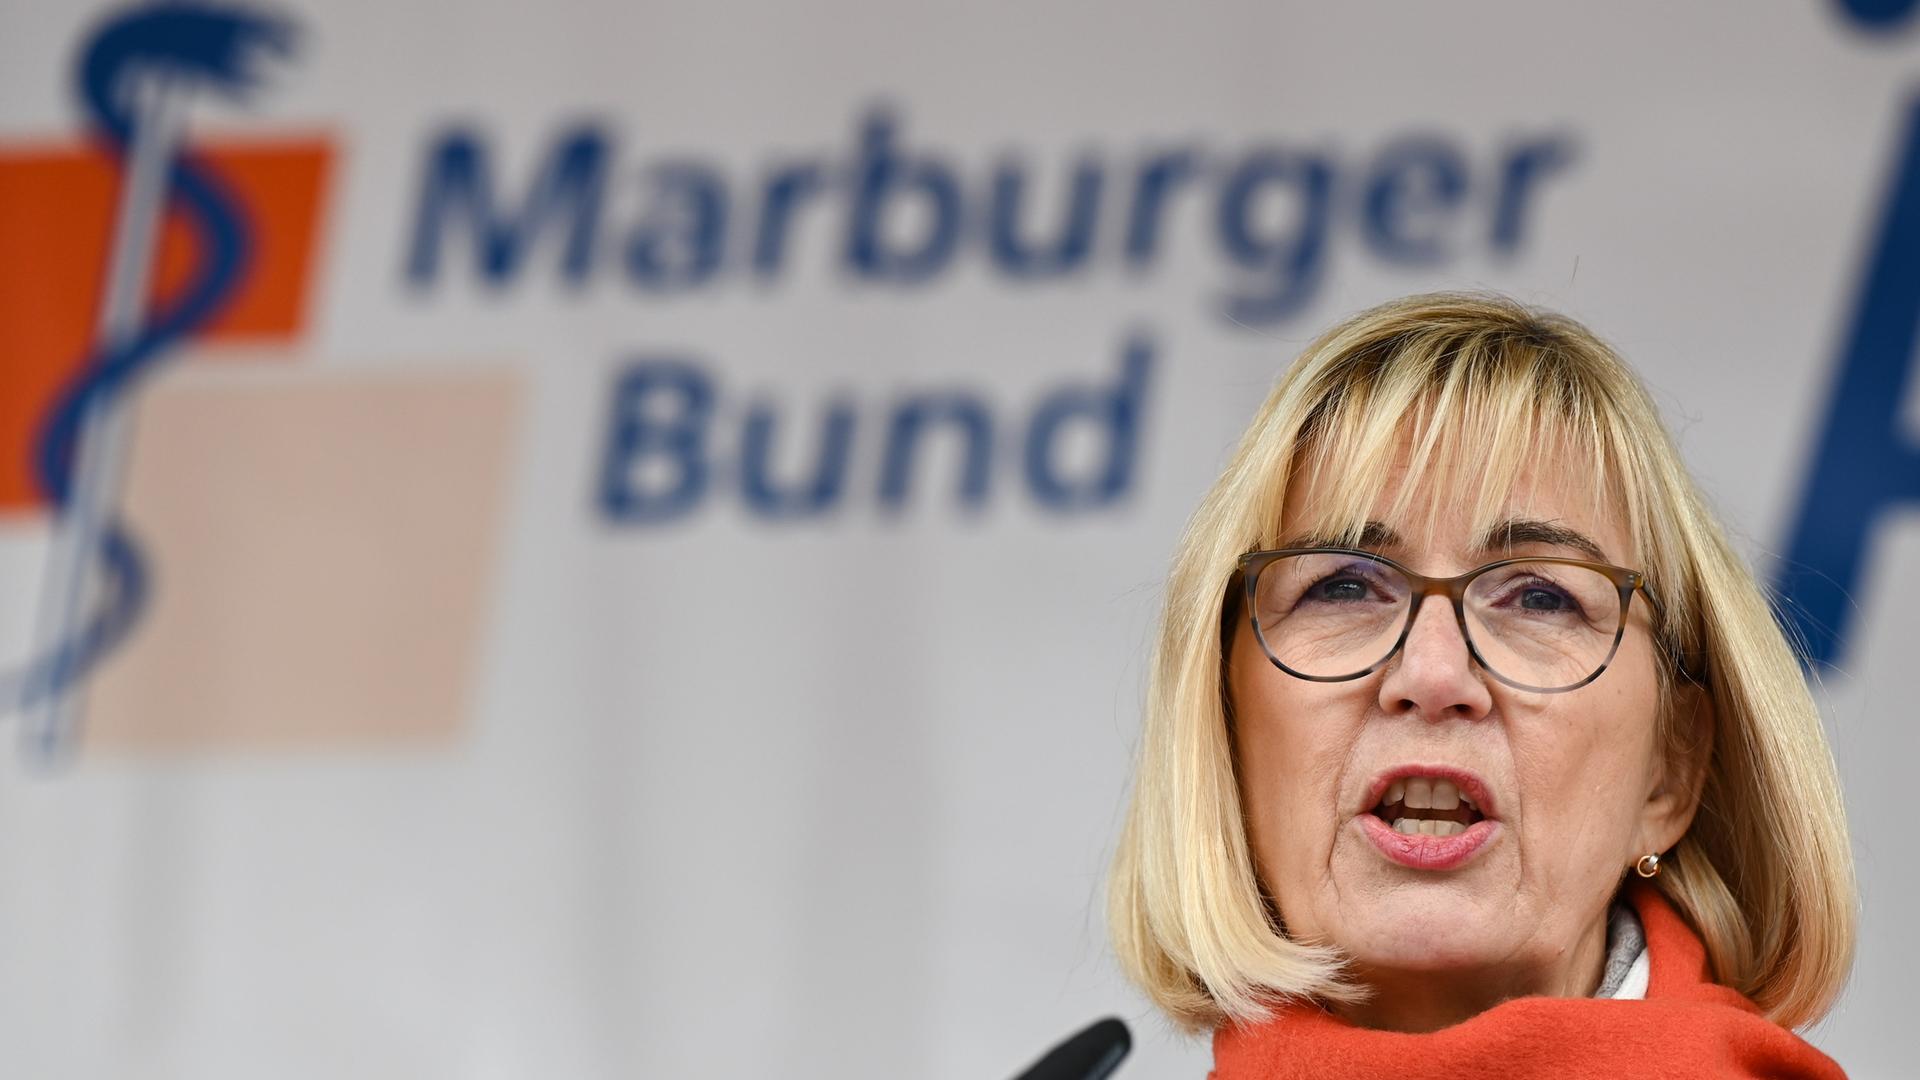 Susanne Johna, Erste Vorsitzende des Marburger Bundes, spricht auf der zentralen Kundgebung des Marburger Bund auf dem Römerberg.